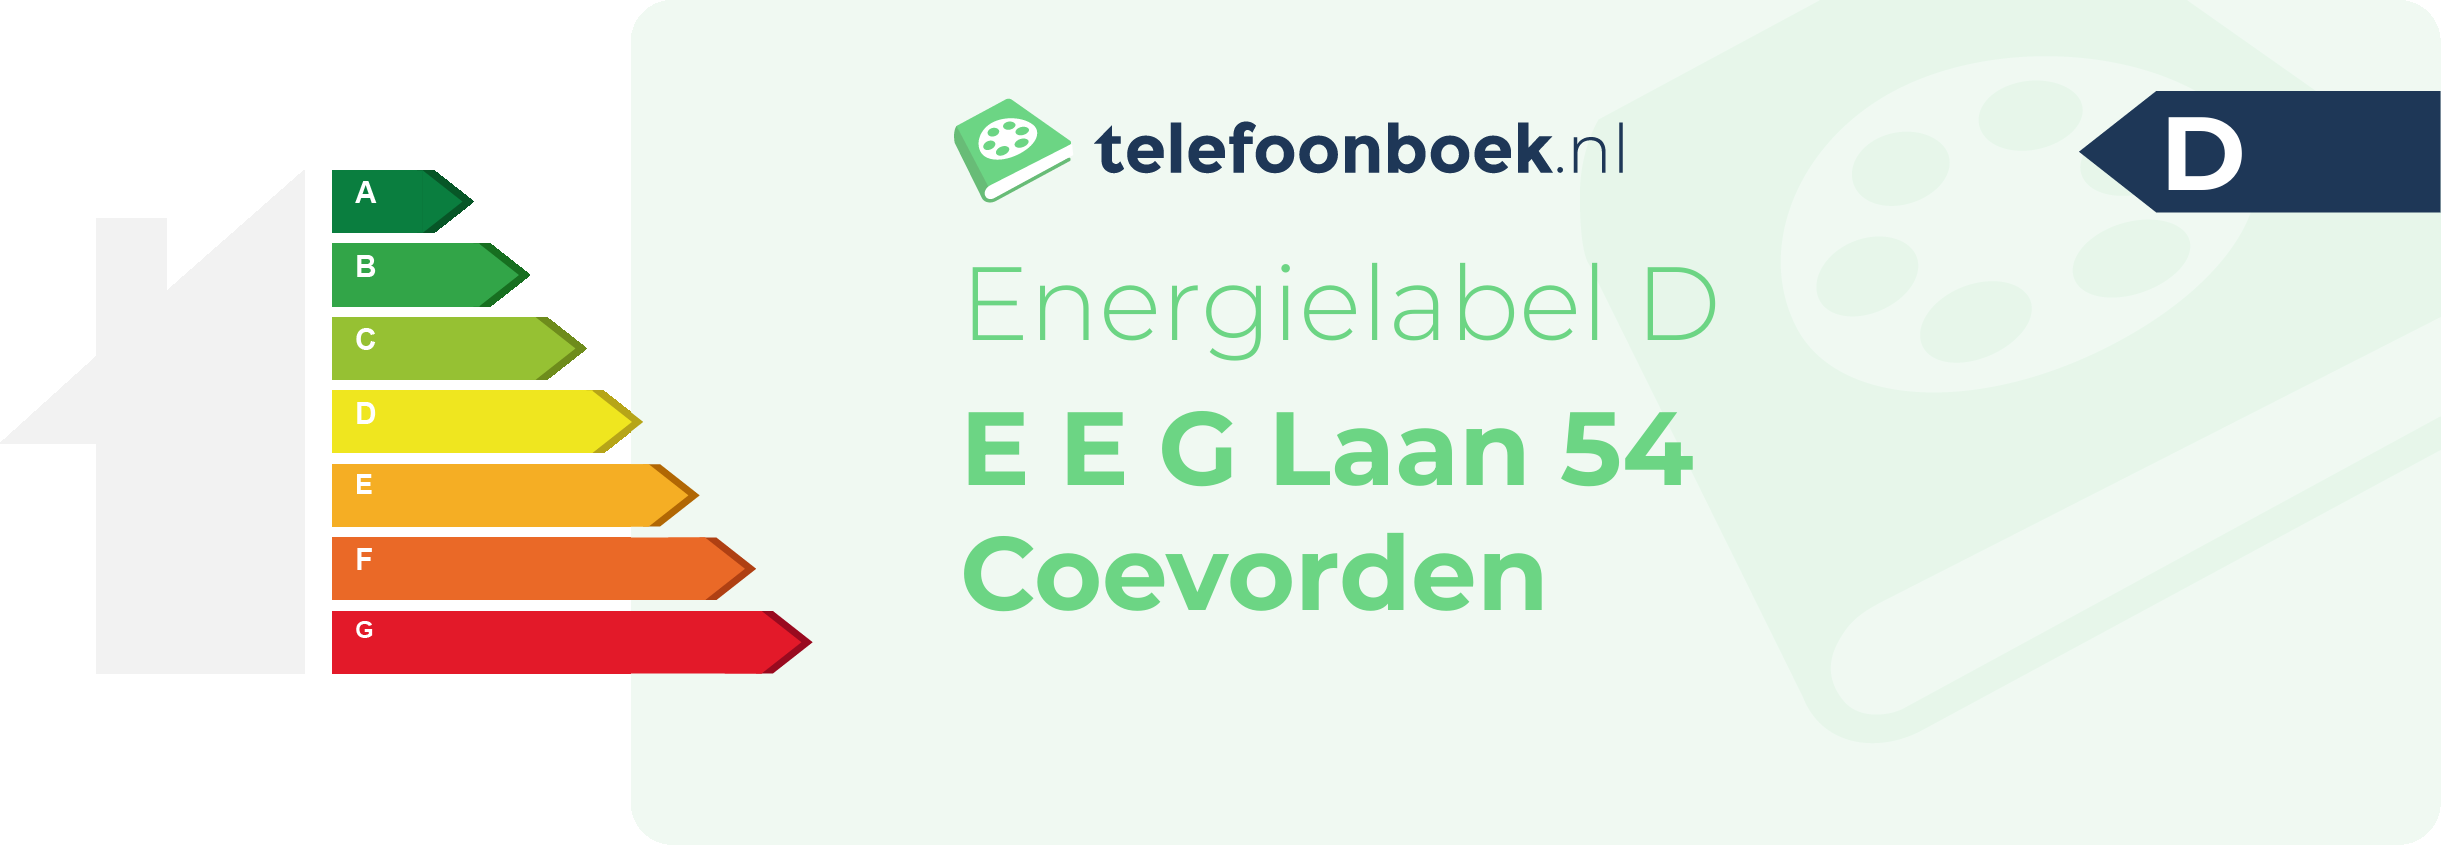 Energielabel E E G Laan 54 Coevorden